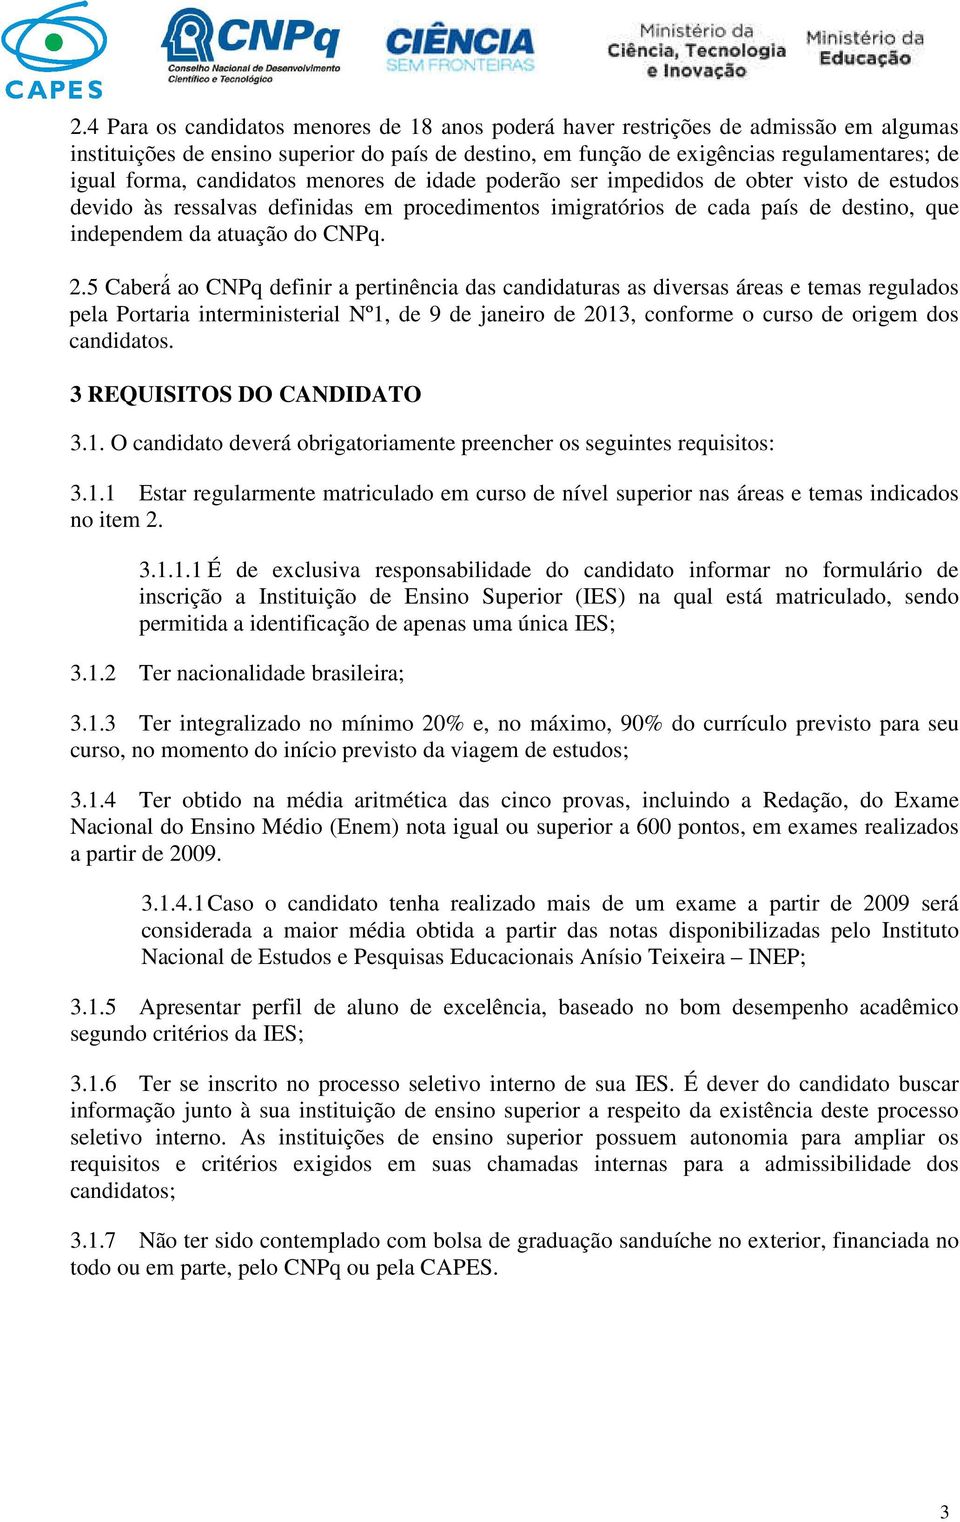 5 Caberá ao CNPq definir a pertinência das candidaturas as diversas áreas e temas regulados pela Portaria interministerial Nº1, de 9 de janeiro de 2013, conforme o curso de origem dos candidatos.